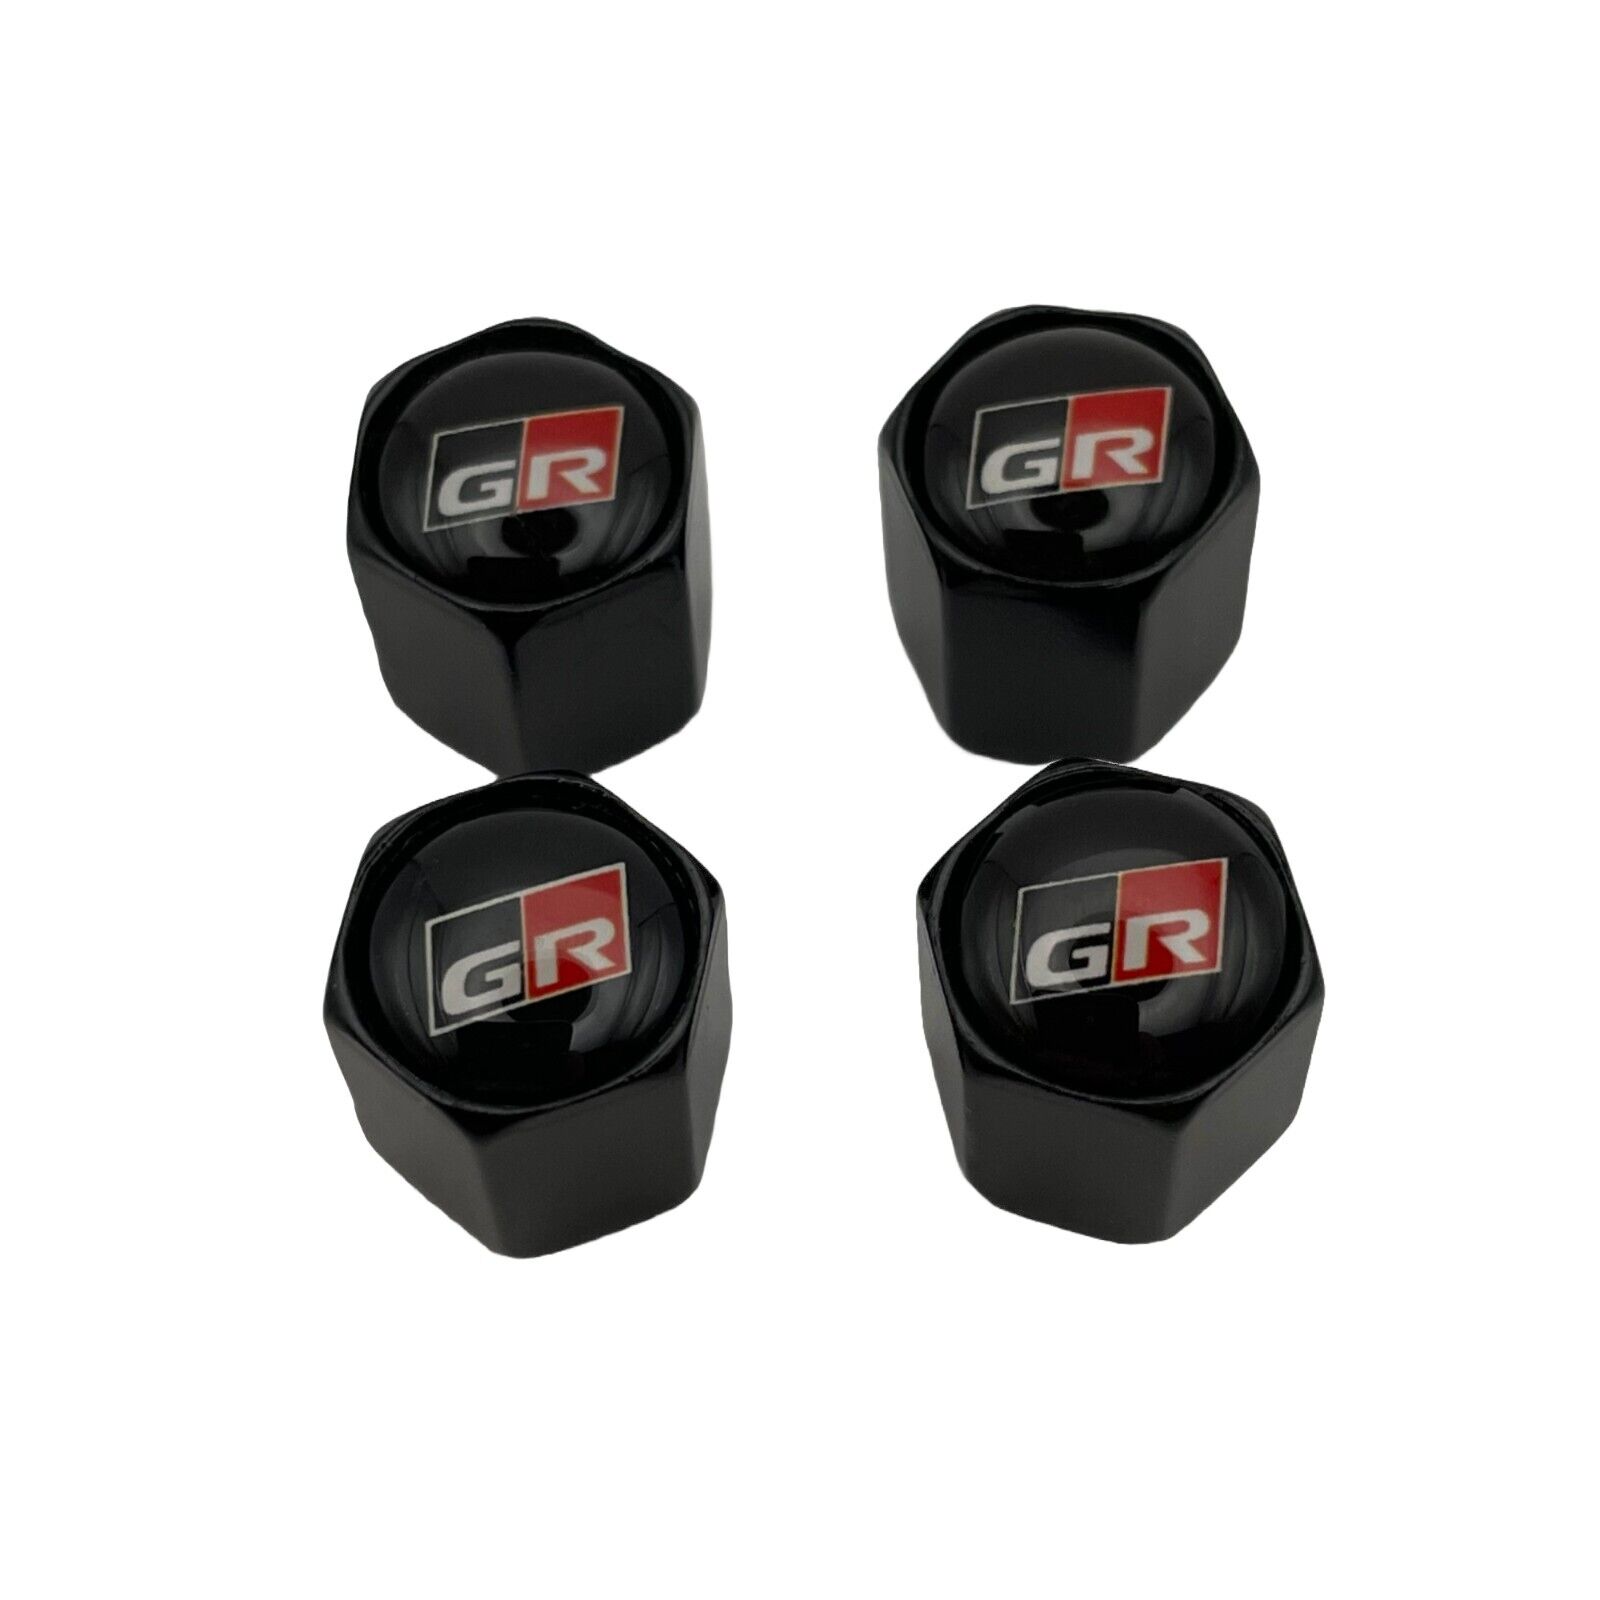 Valve Stem Caps for Toyota GR Supra, GR86, & GR Corolla